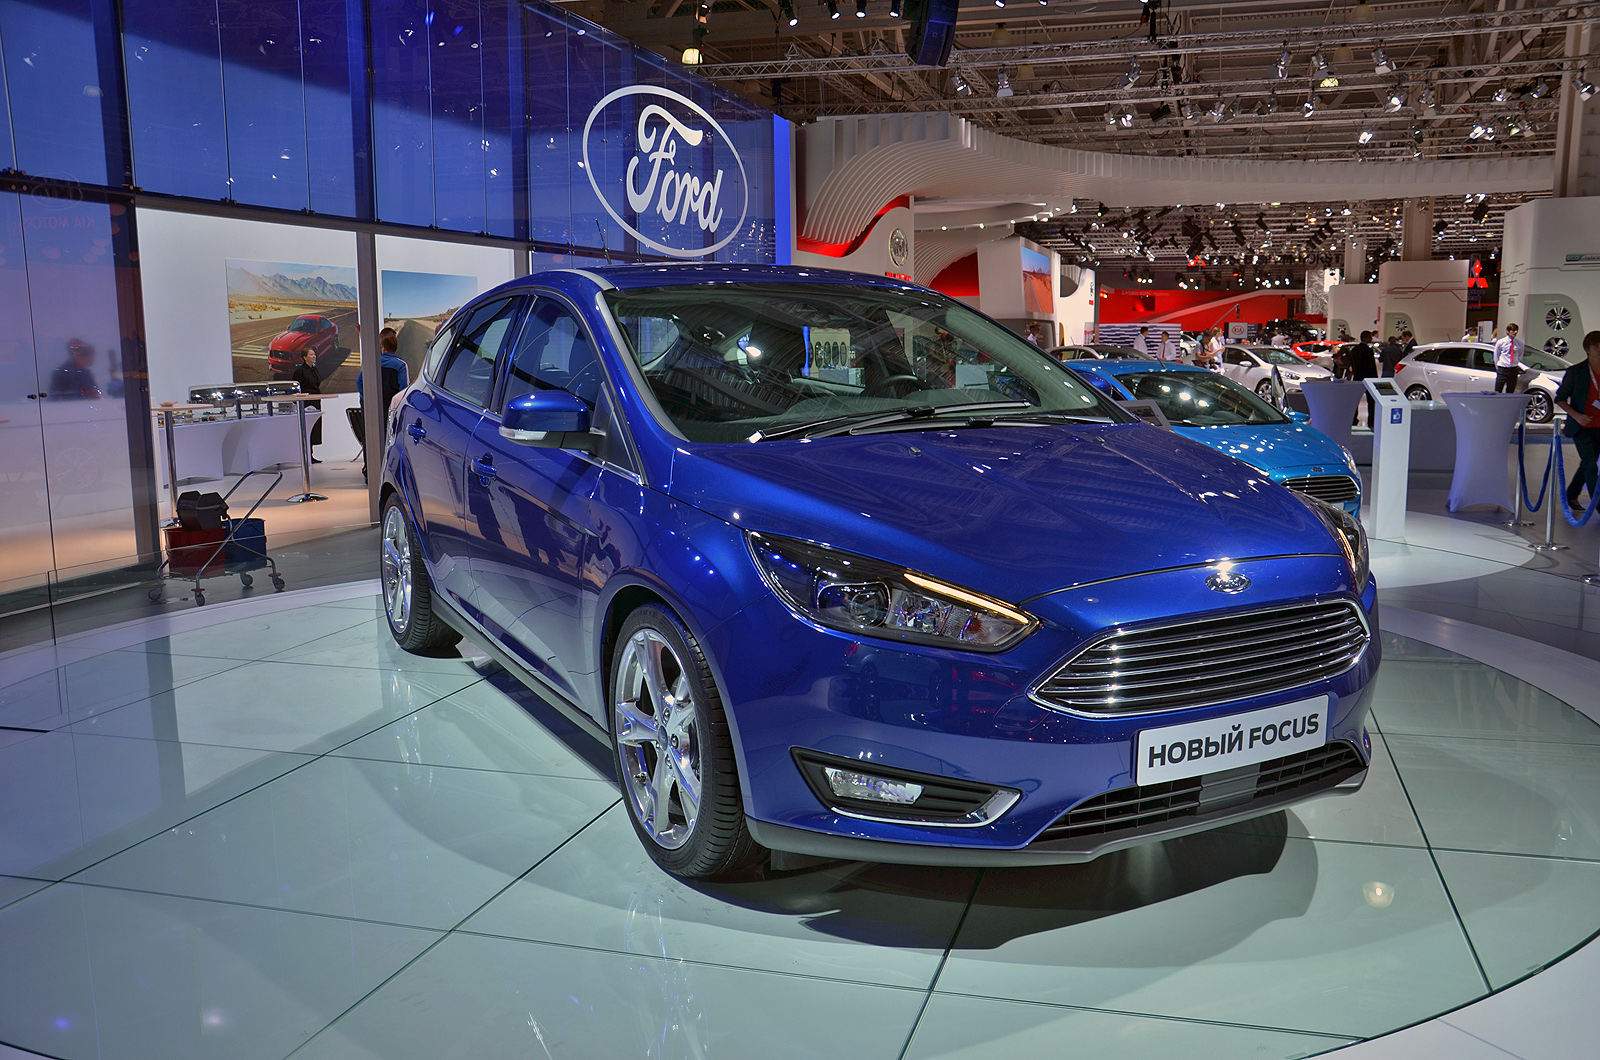 Автомобили Ford (весь модельный ряд) цены, характеристики ...